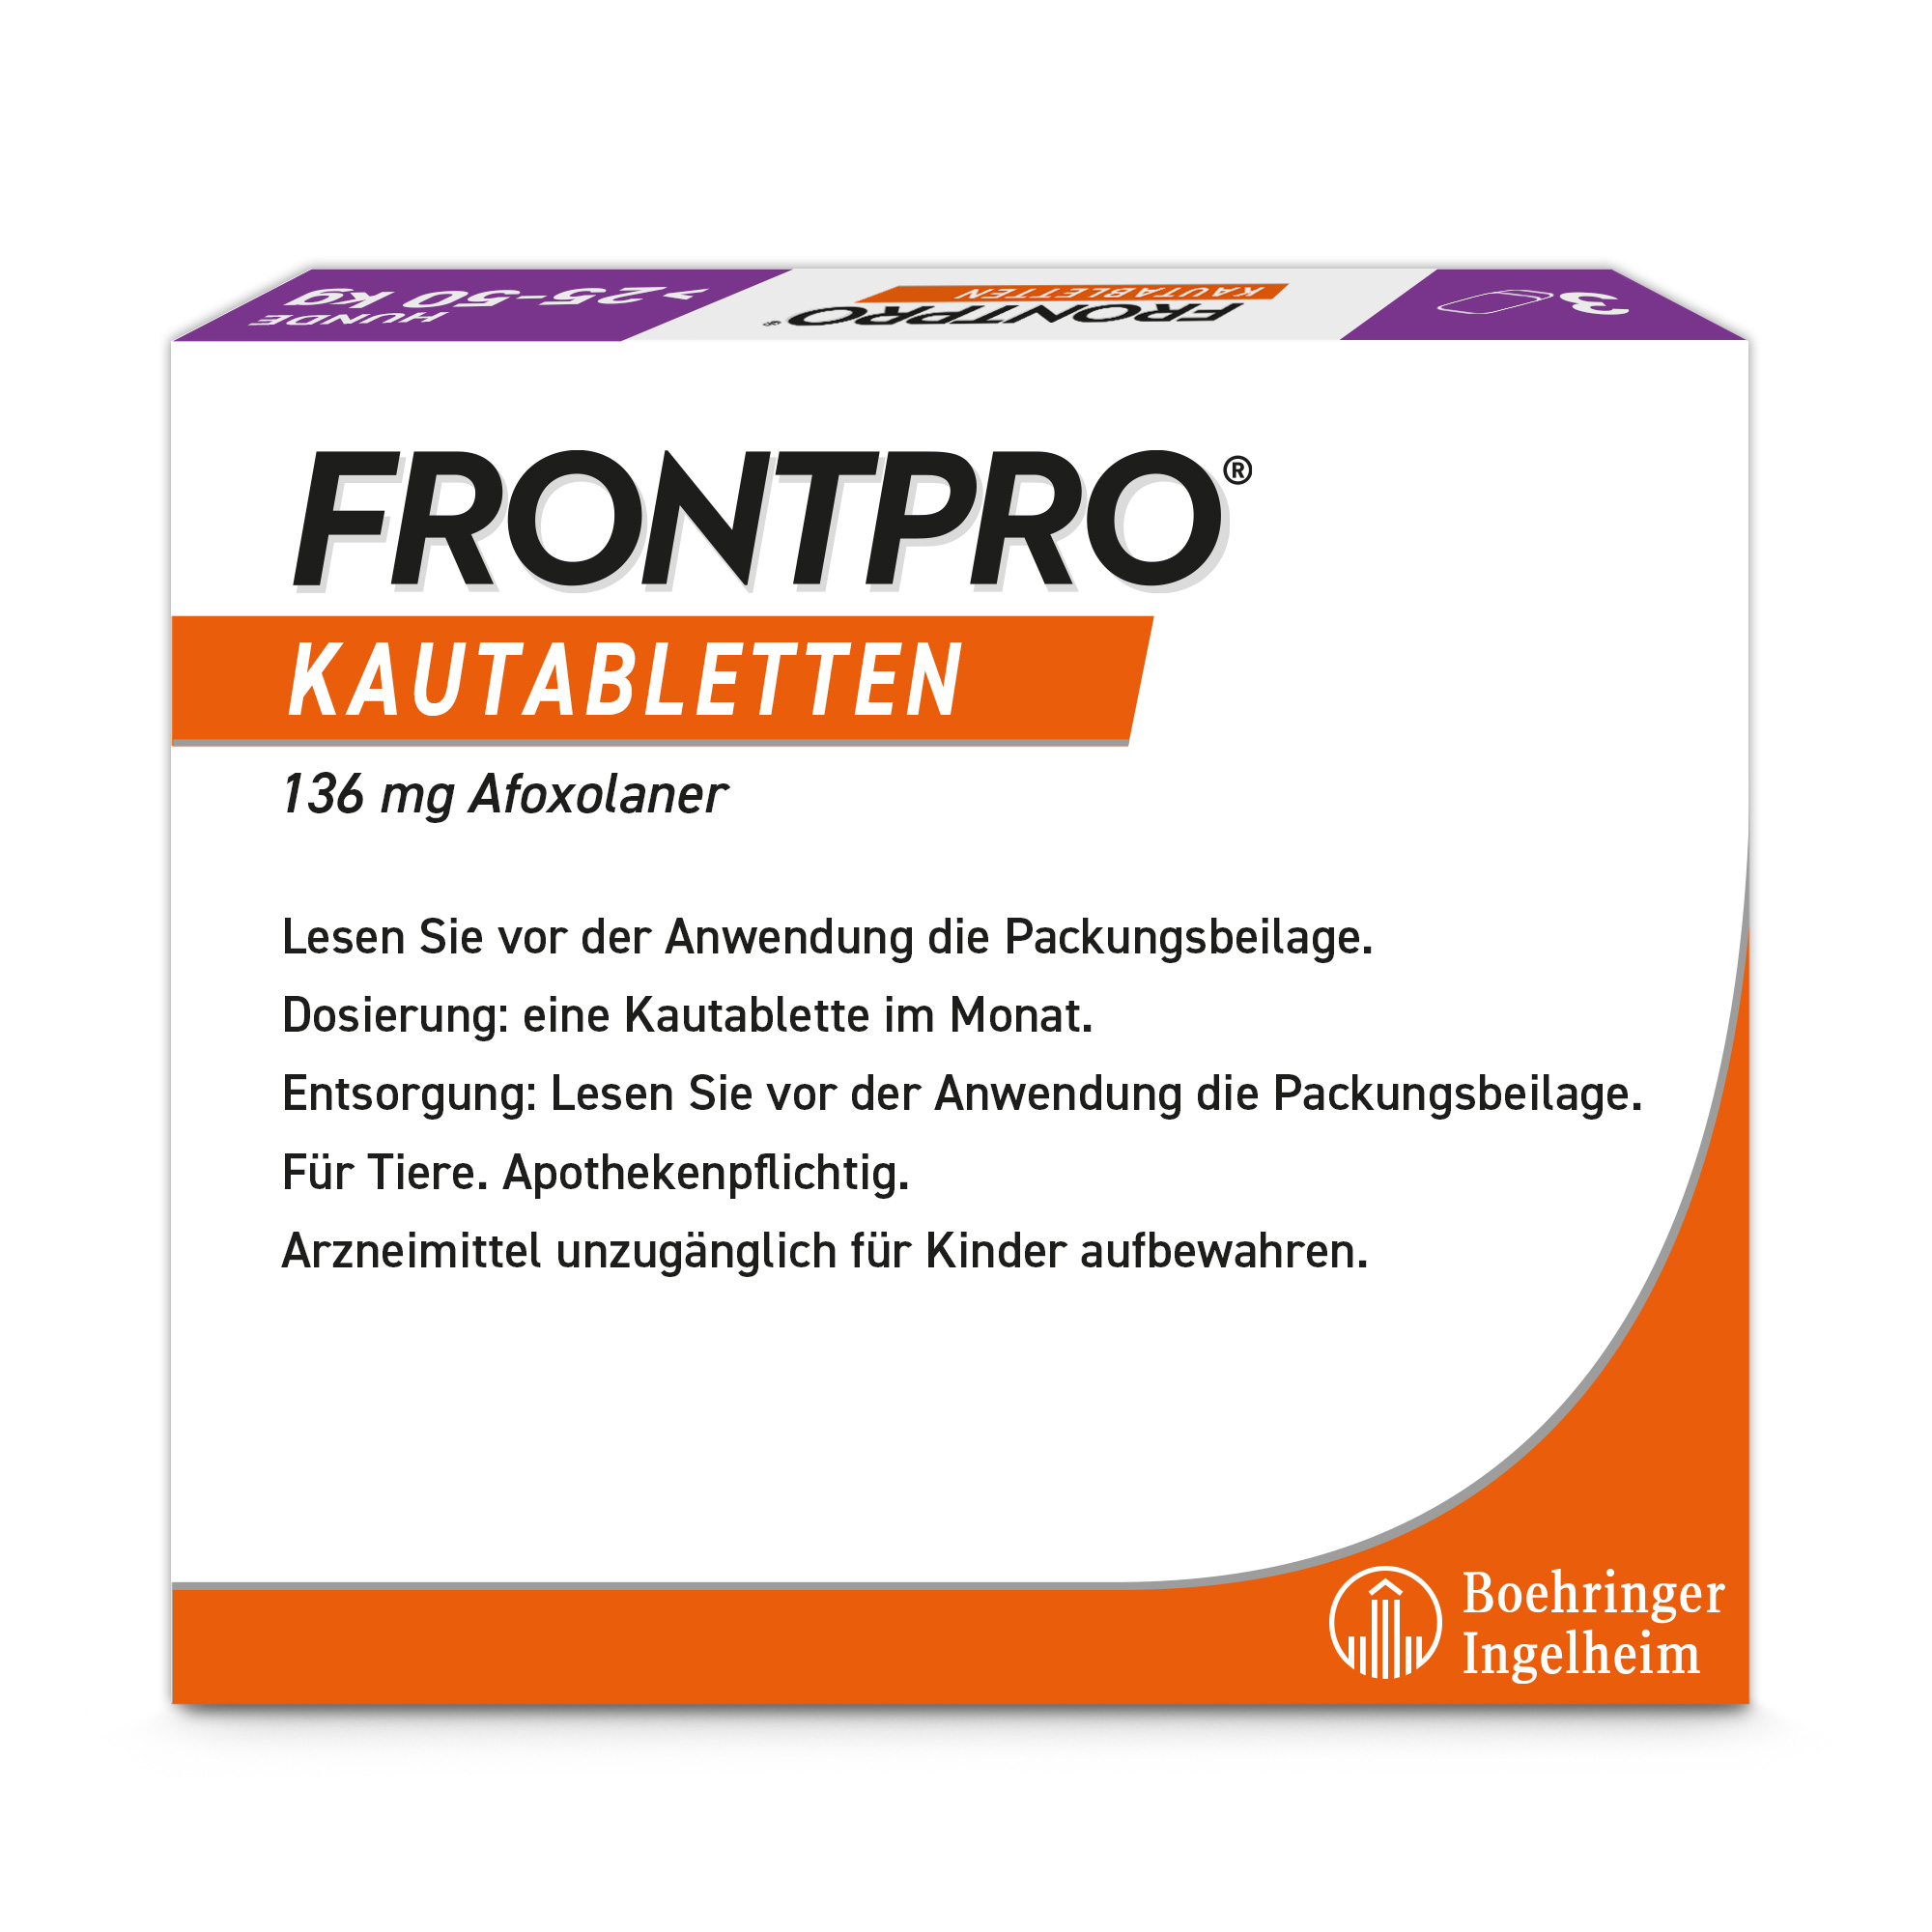 FRONTPRO XL Deutsche Packung Back